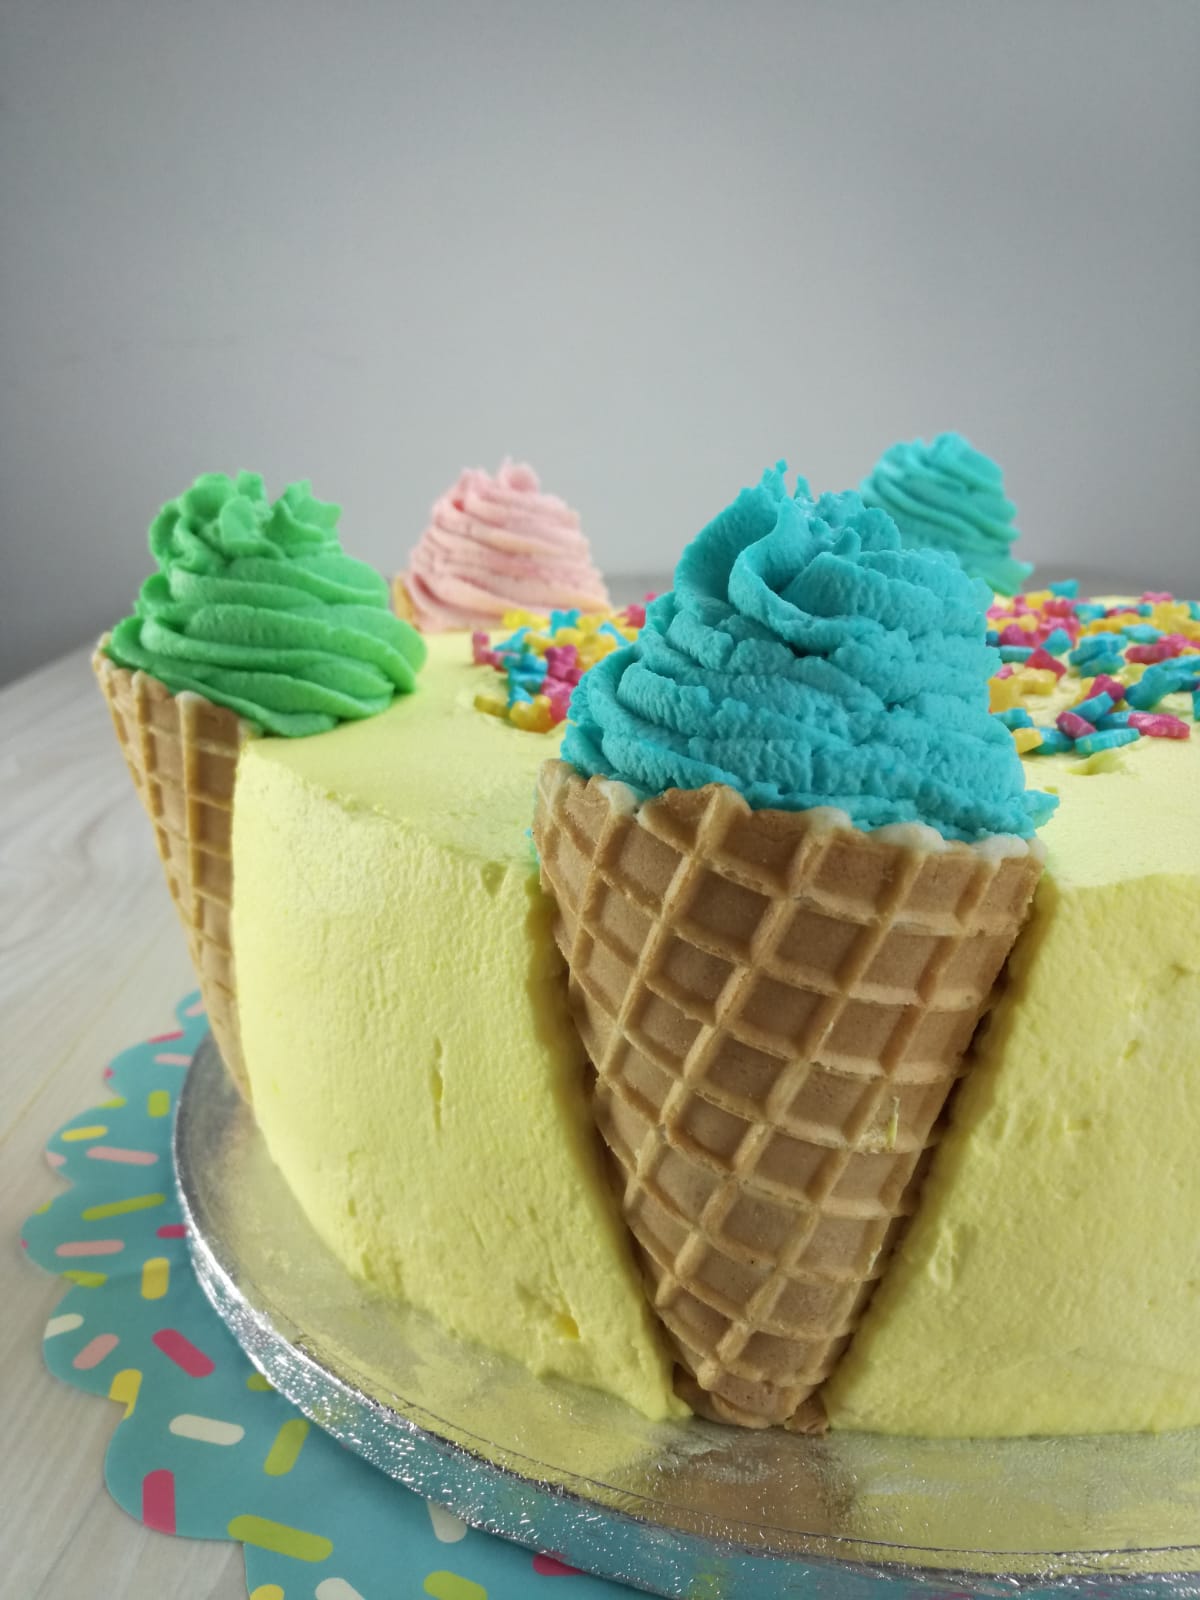 Kerstins Kuchen Kreationen: Eiswaffeltorte - No-Bake-Kuchen! Einfach ...